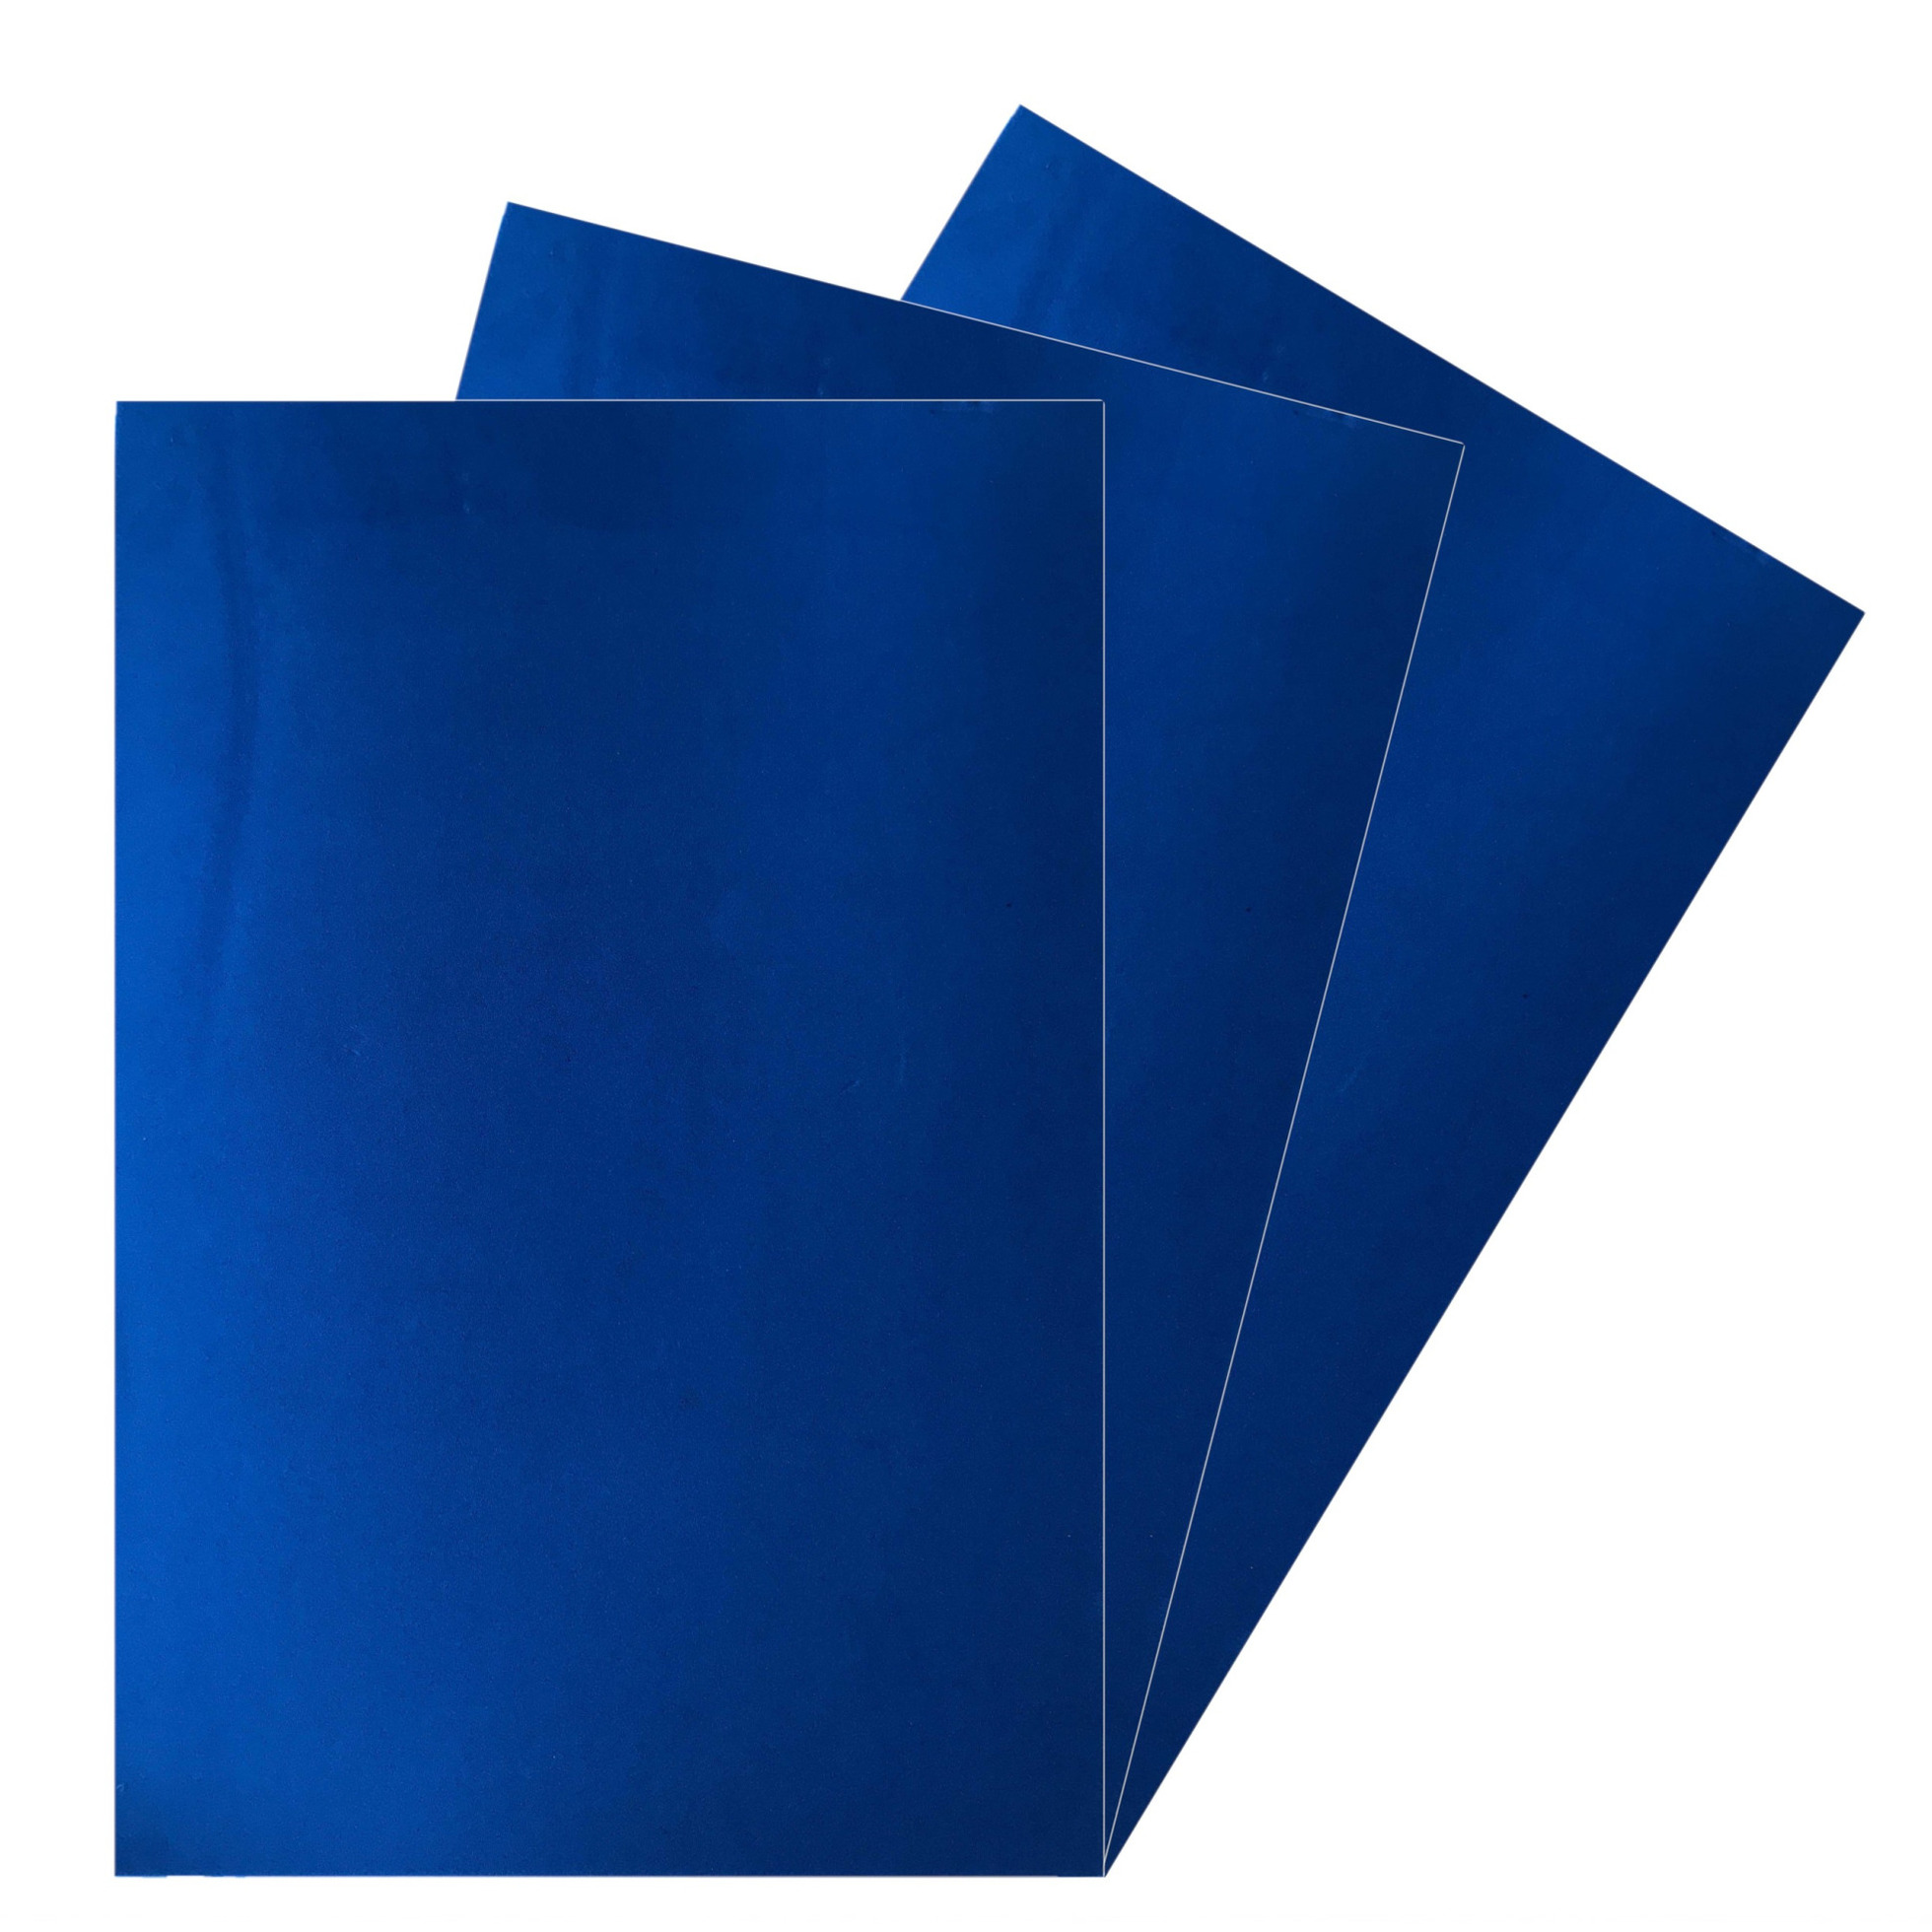 3x Vellen crepla knutsel foam rubber blauw 20 x 30 cm